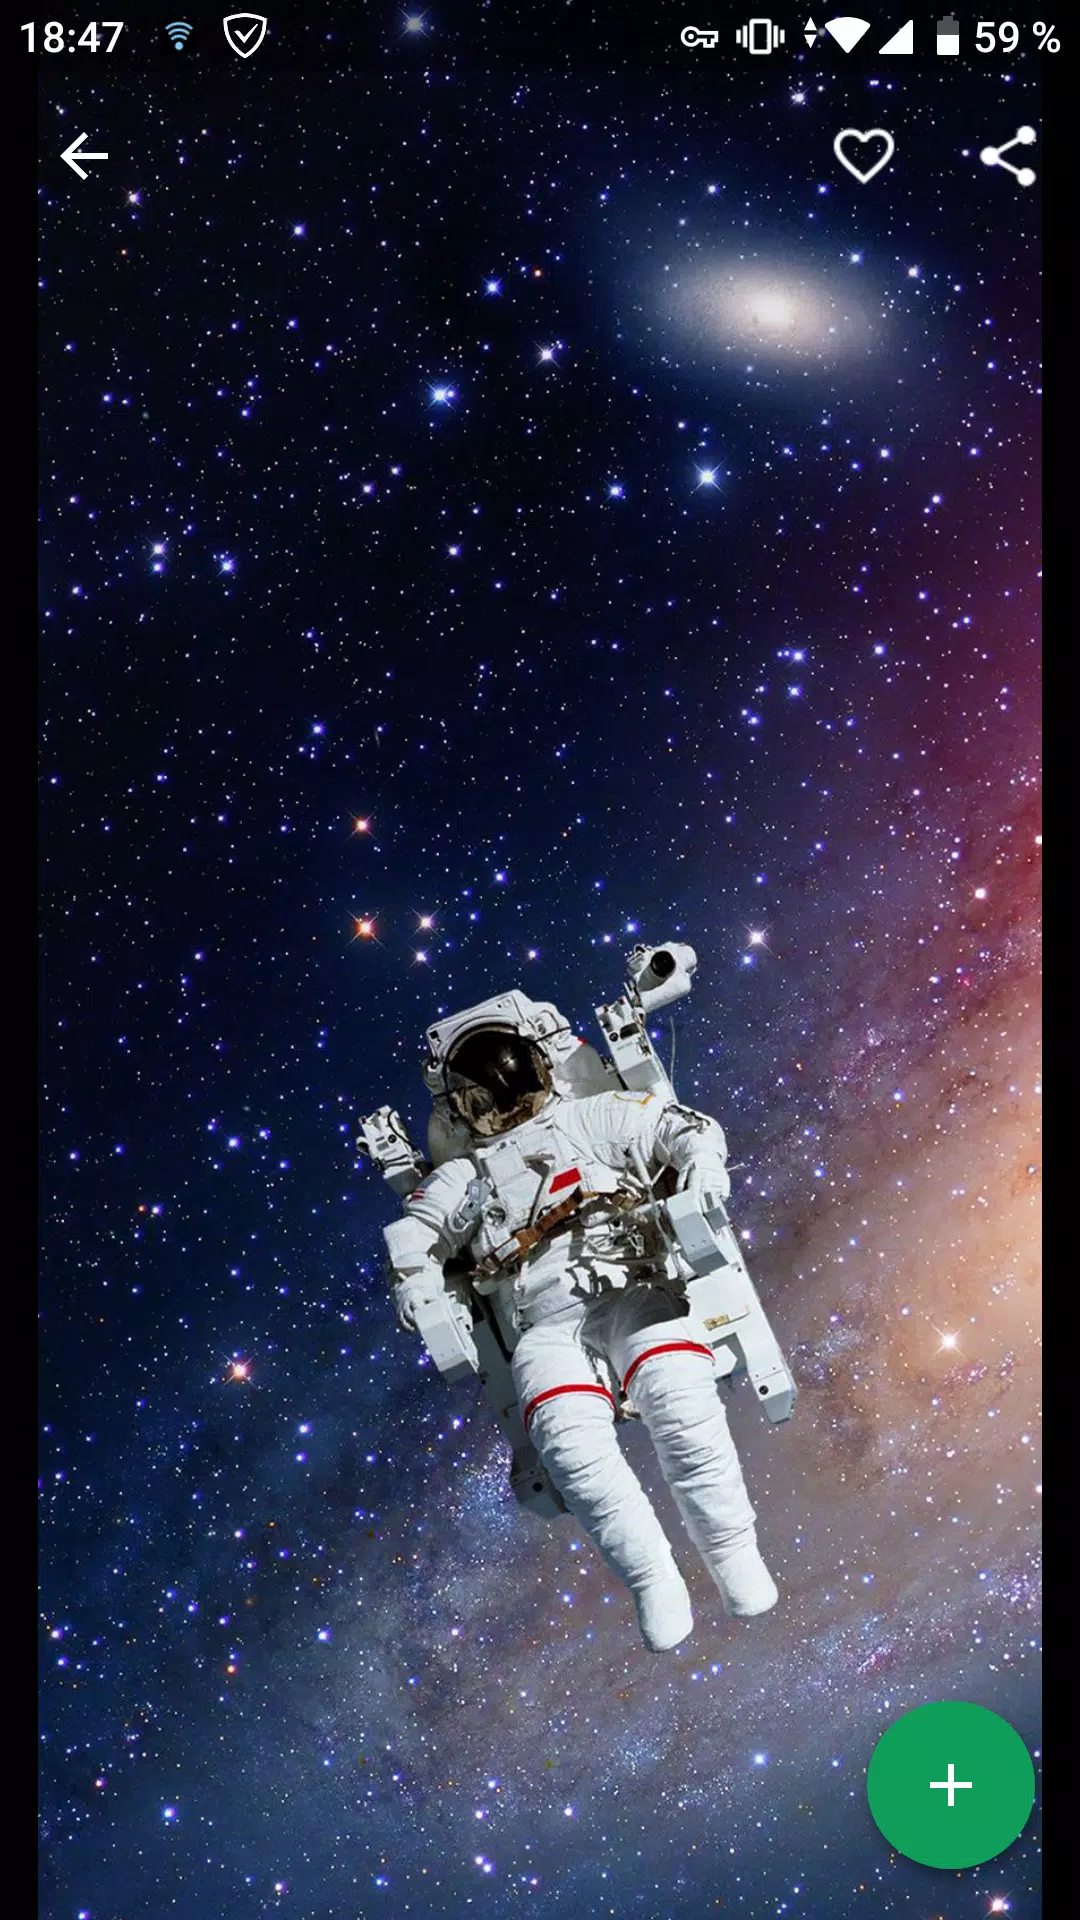 Descarga de APK de Fondos Astronautas para Android